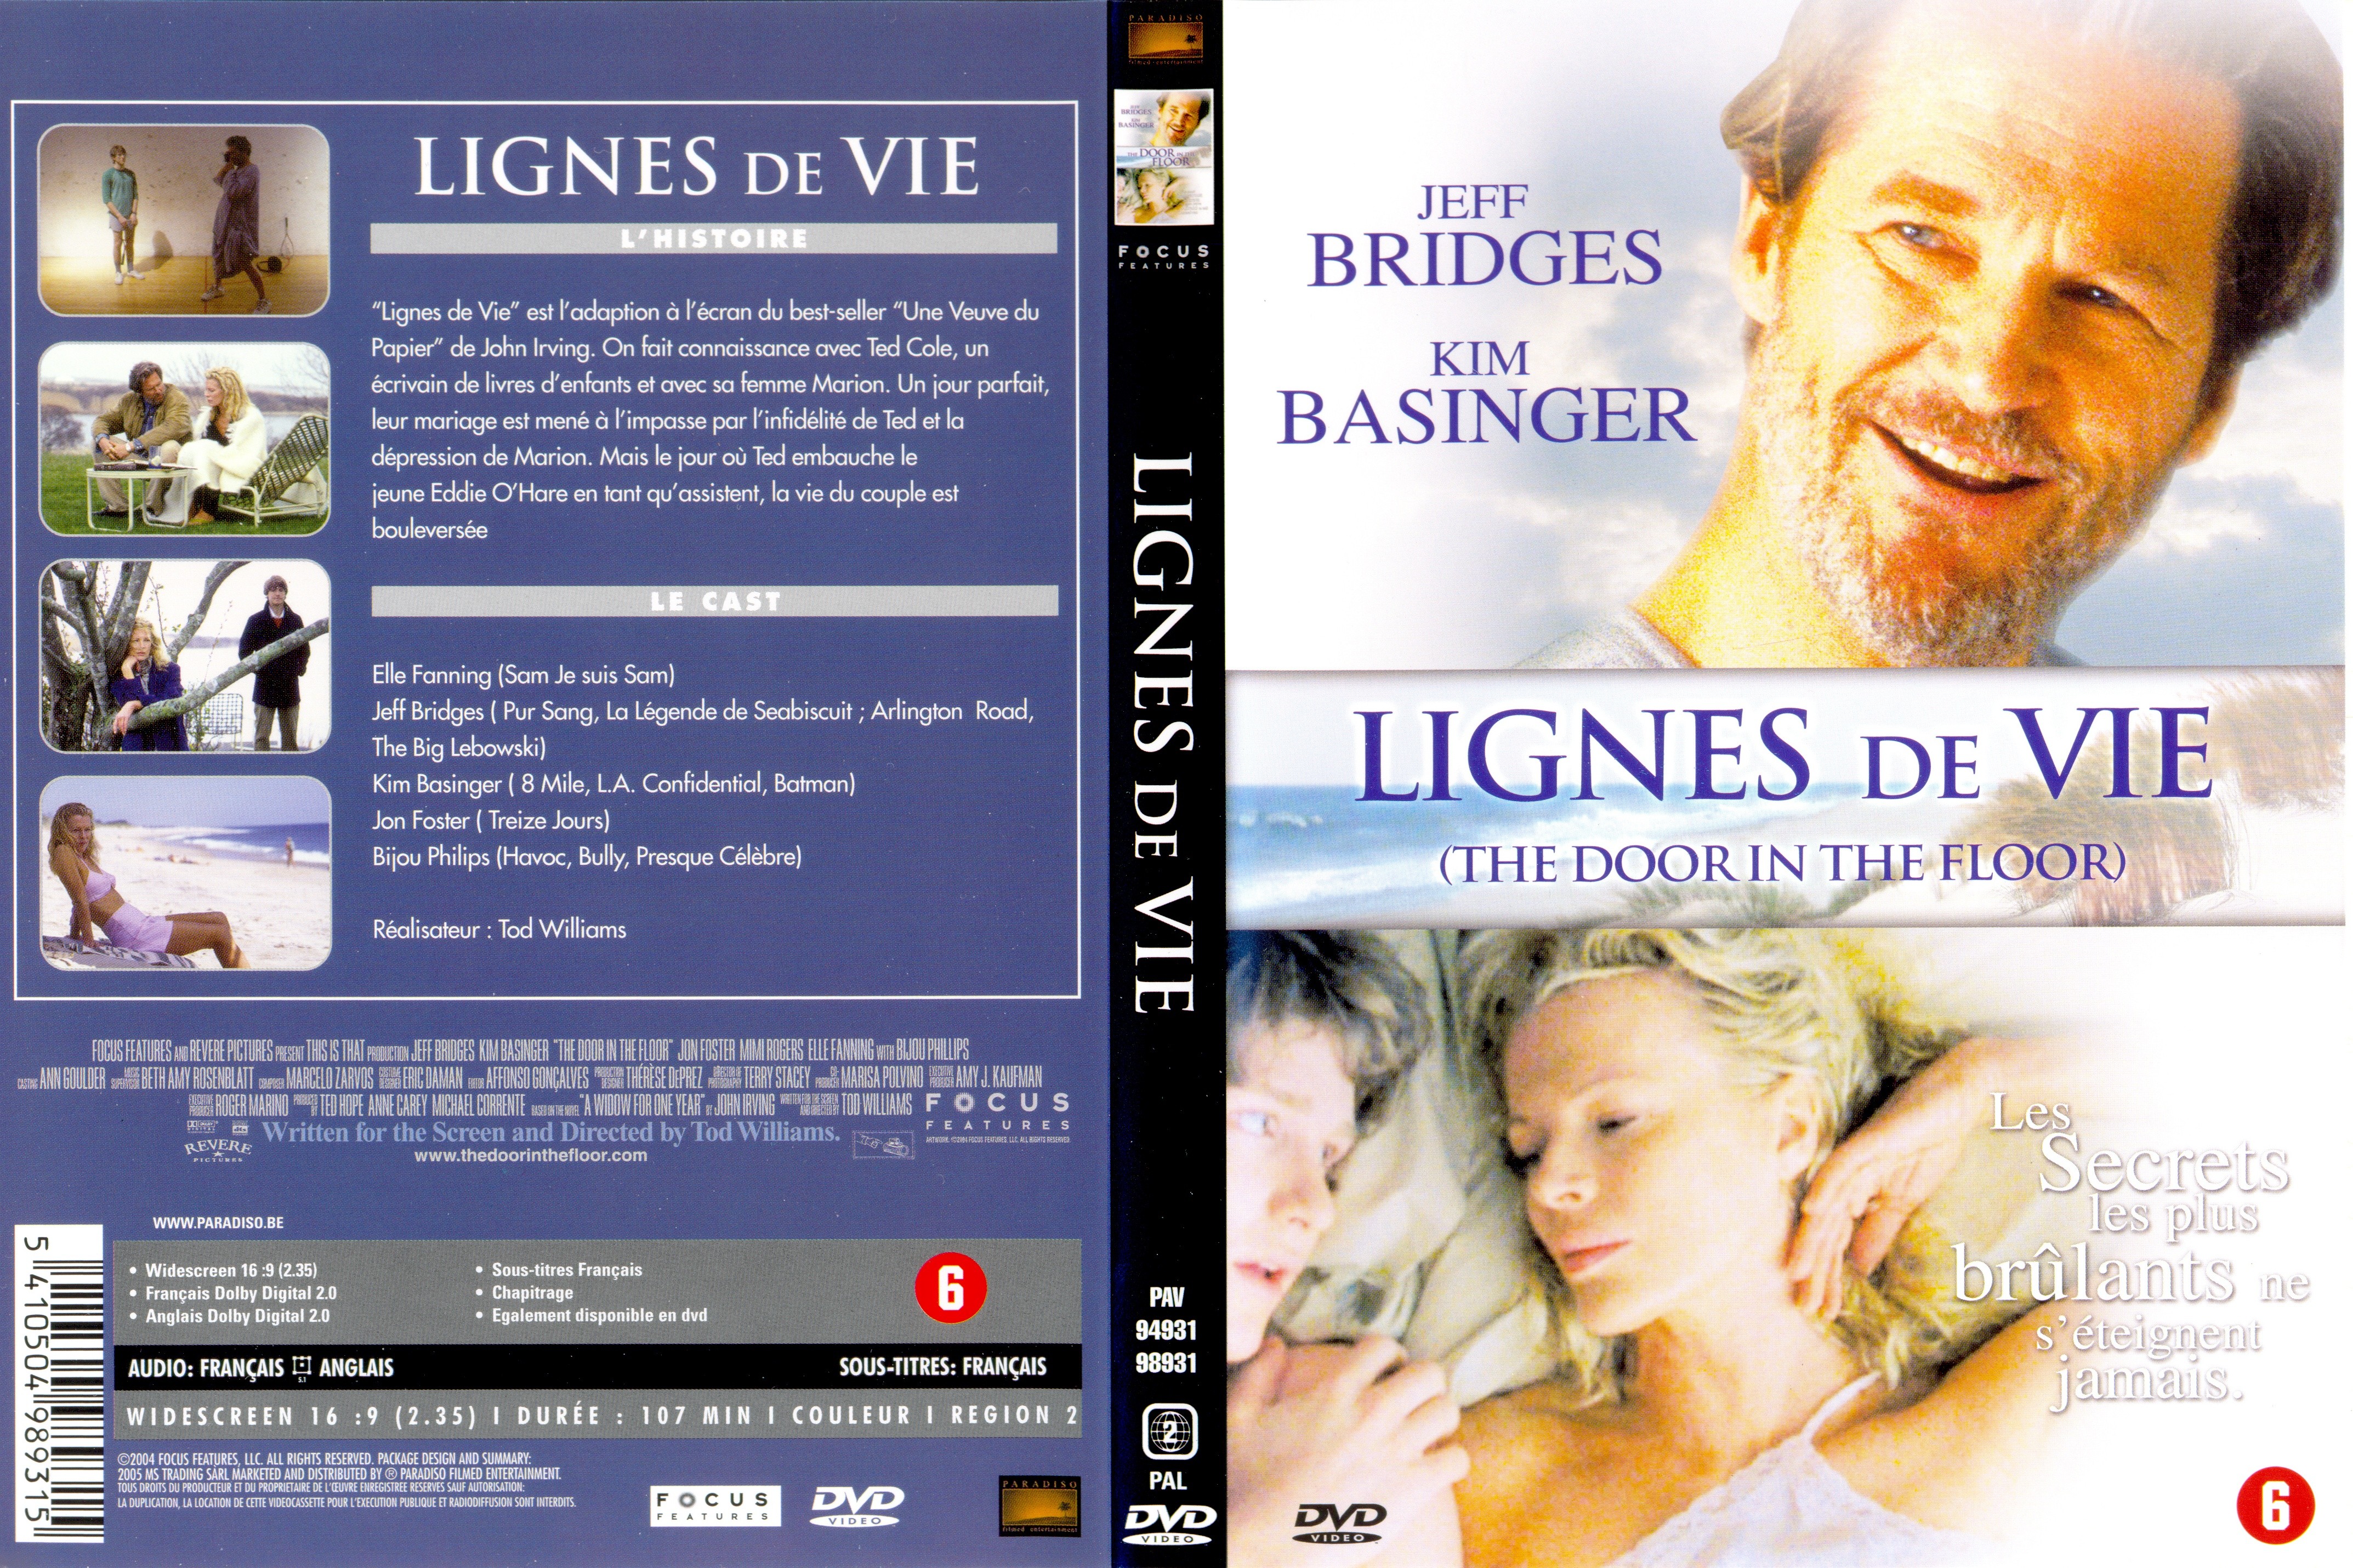 Jaquette DVD Lignes de vies v2